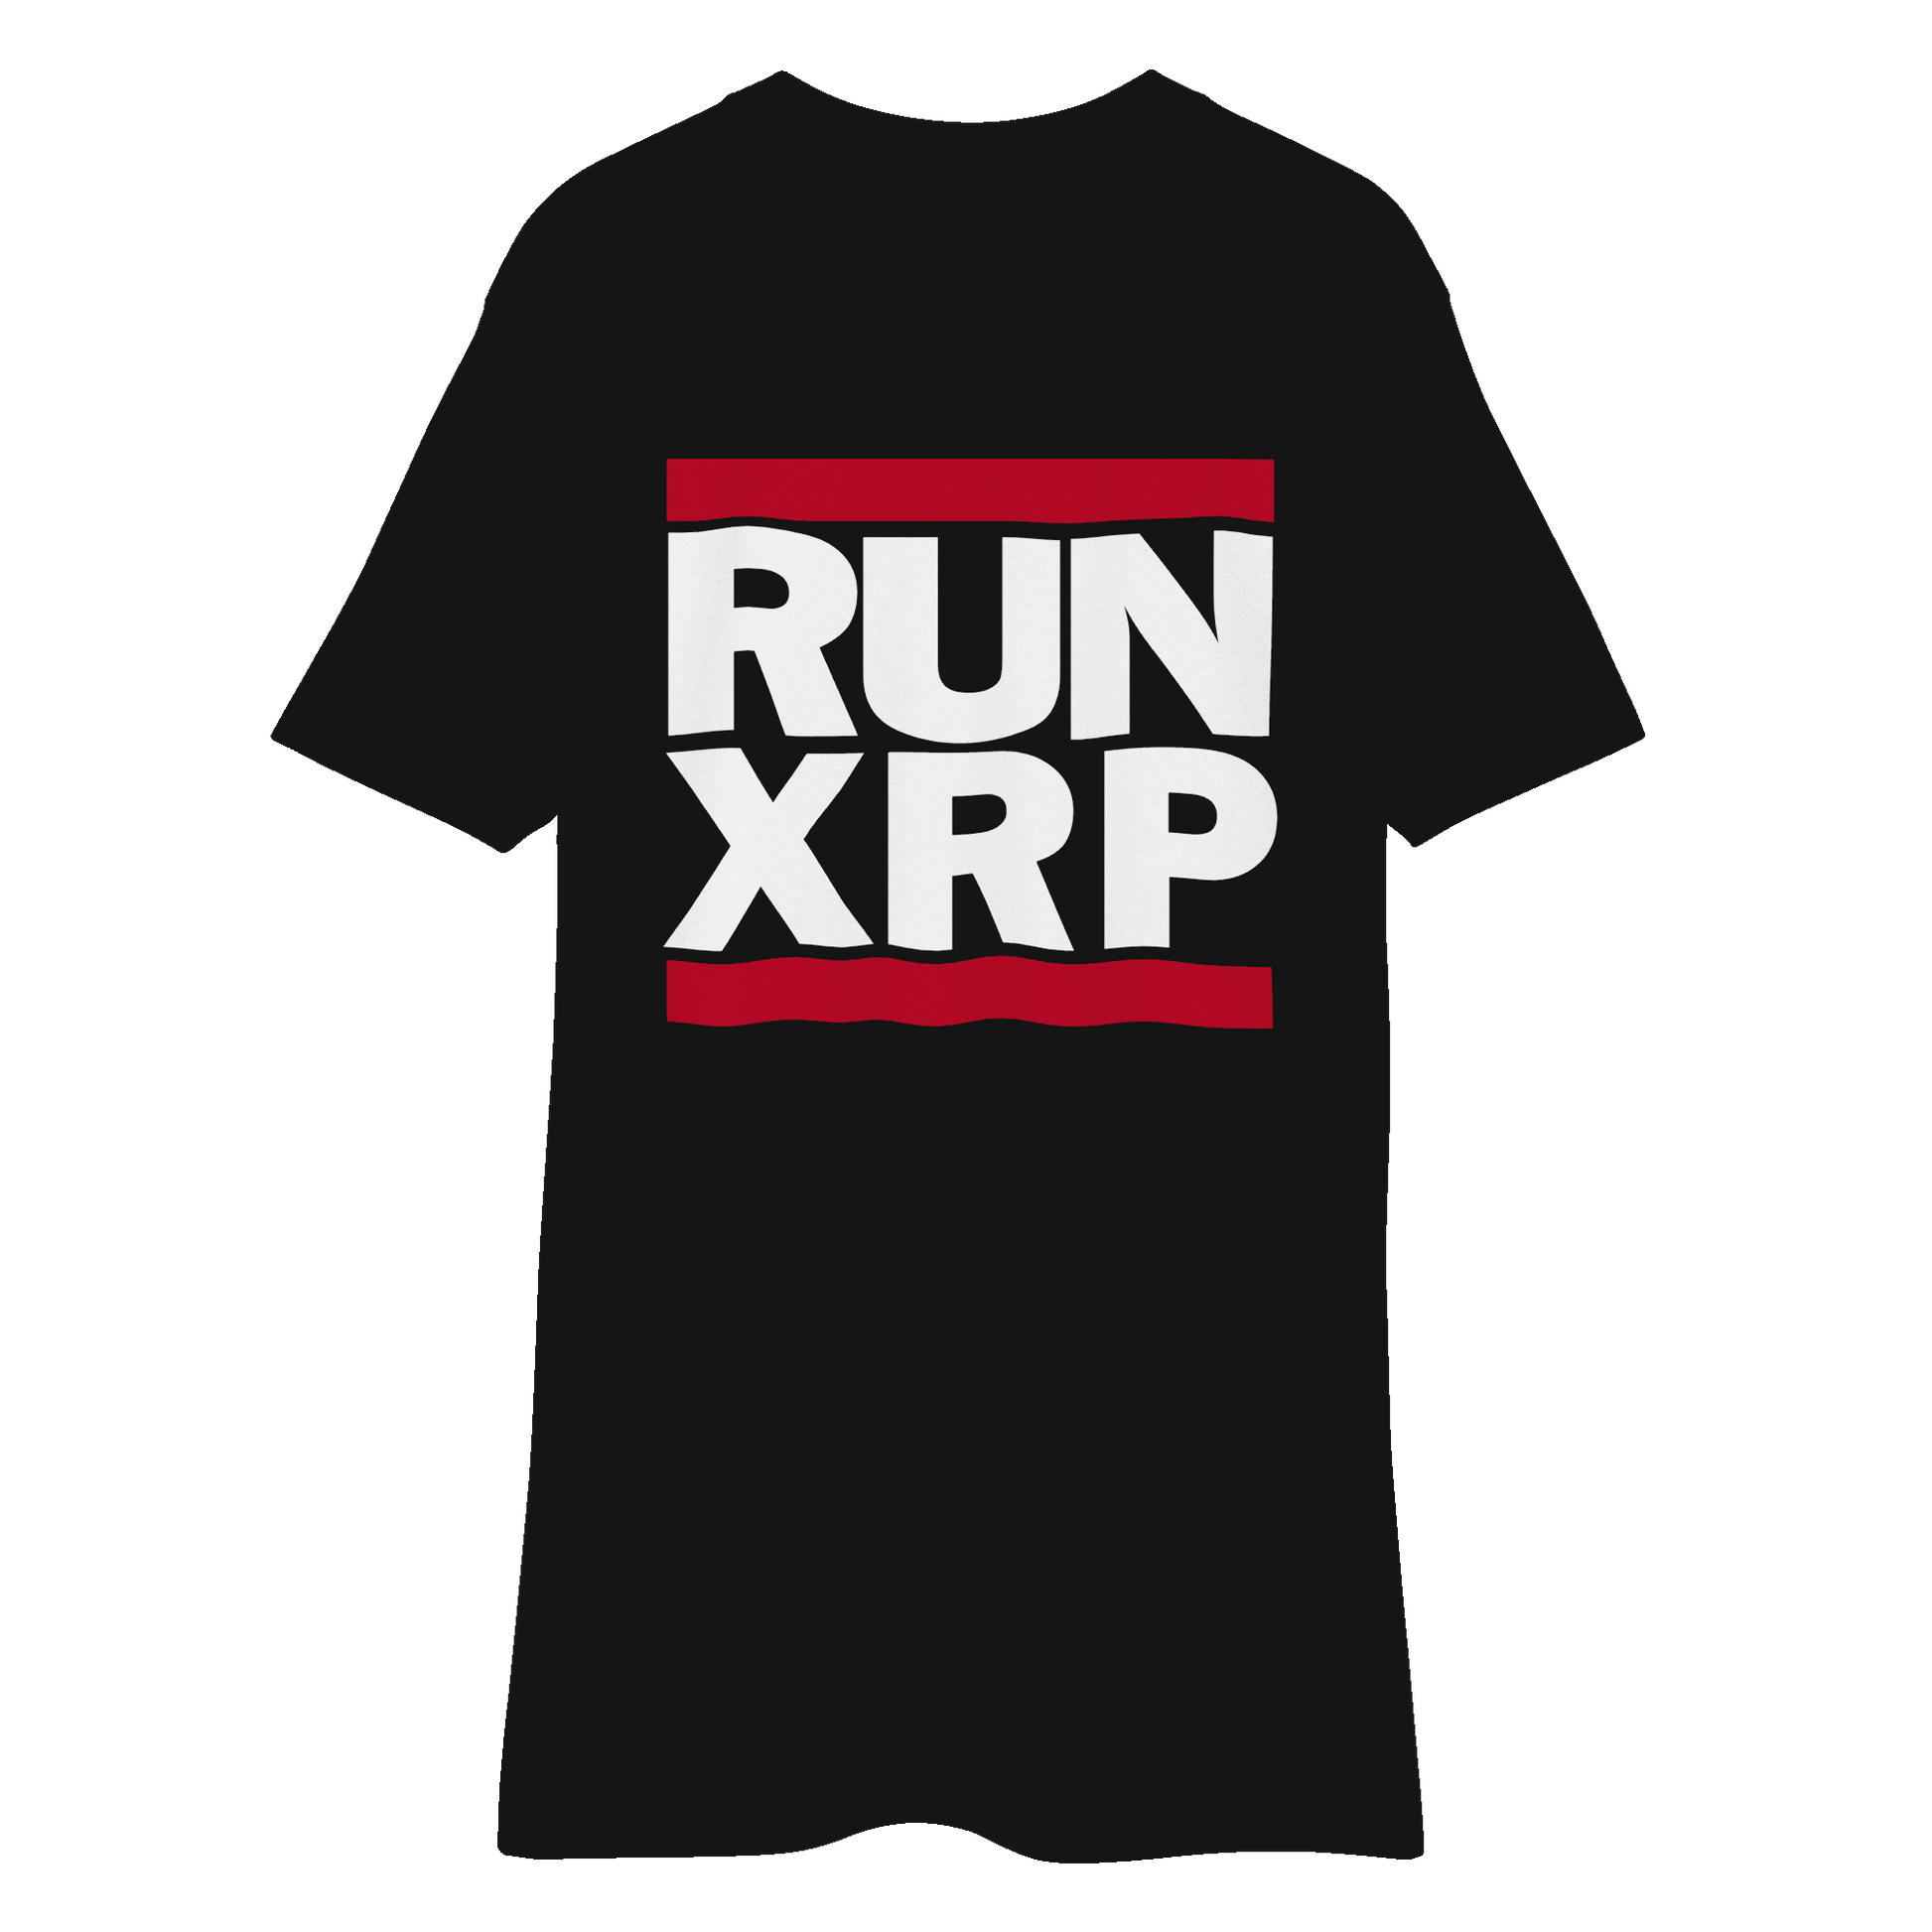 RUN XRP - Black Men’s premium heavyweight tee